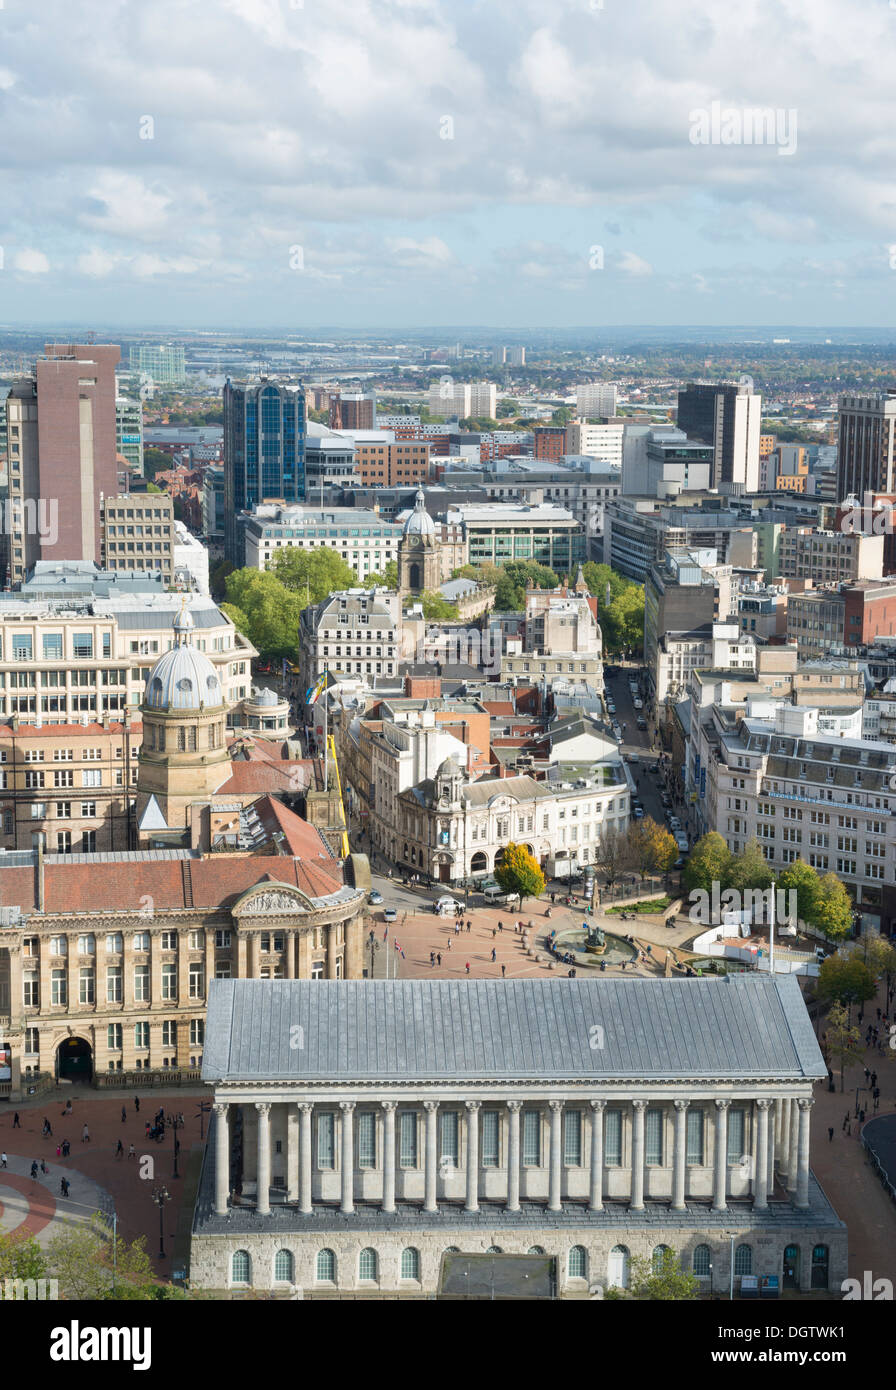 Birmingham city centre, West Midlands, England, UK, West Midlands, England, UK Stock Photo